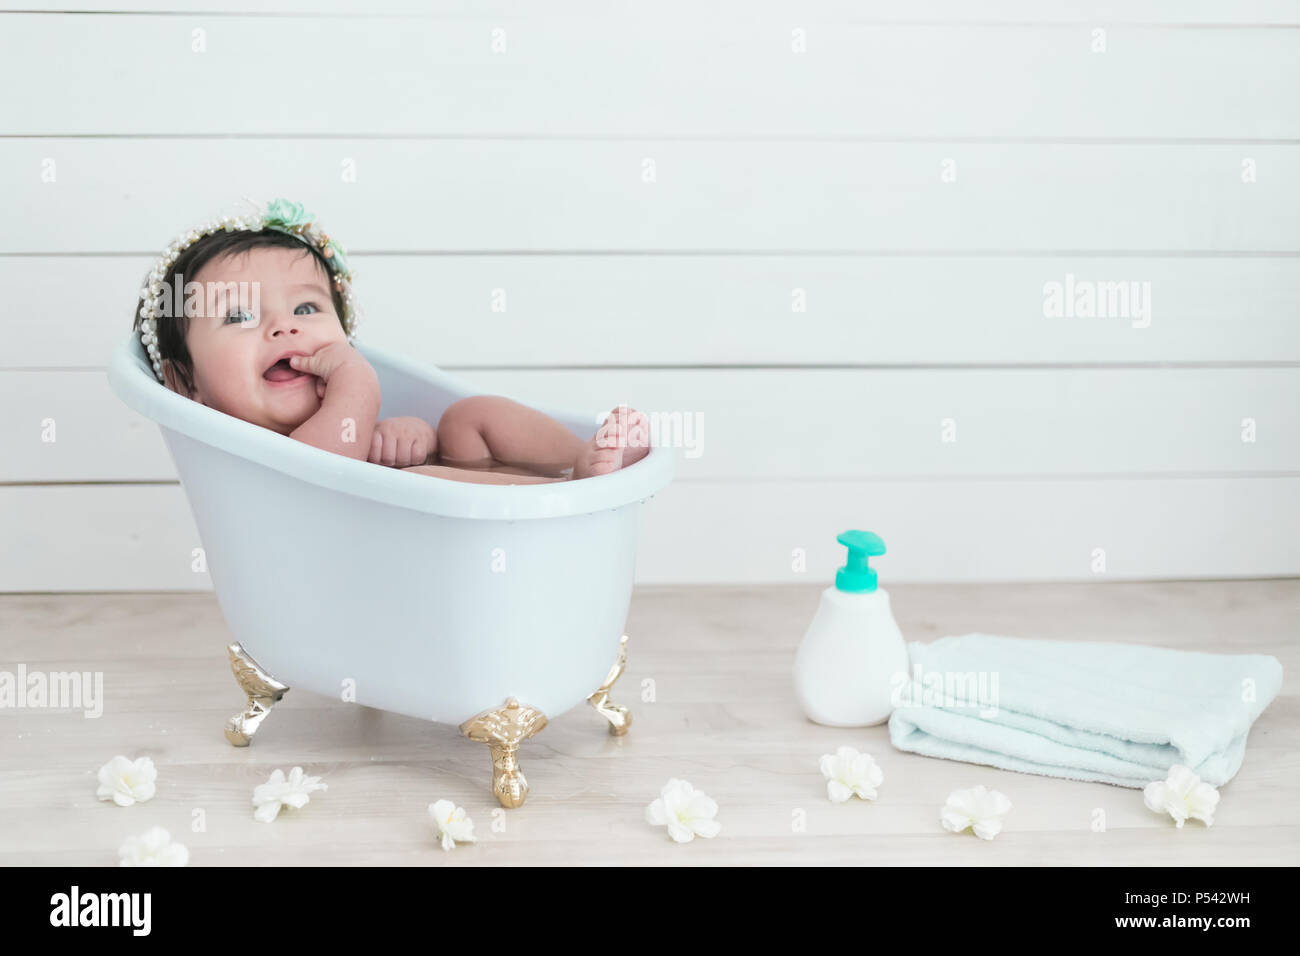 Joli bébé heureux de prendre une douche dans une baignoire victorienne Banque D'Images